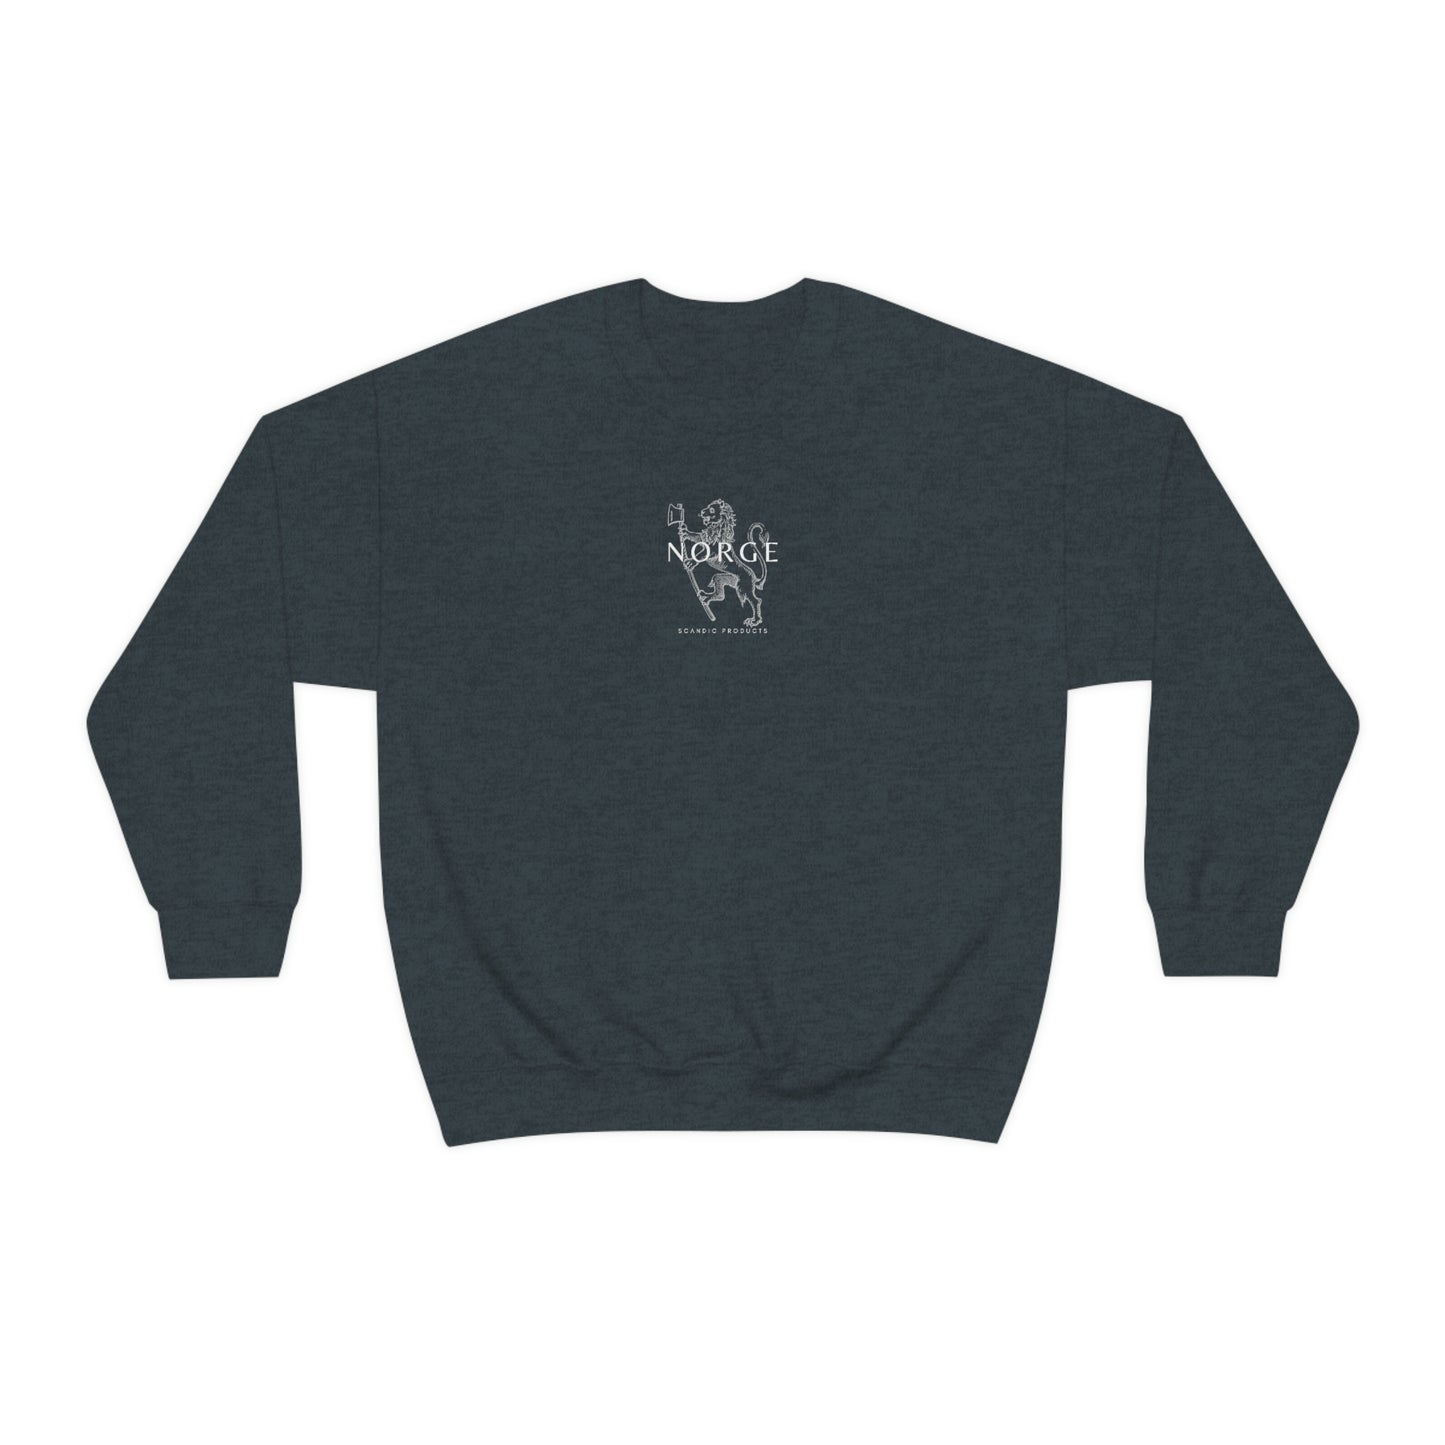 Norwegian Sweatshirt - Norway Lion Coat of Arms Unisex Crewneck Sweater